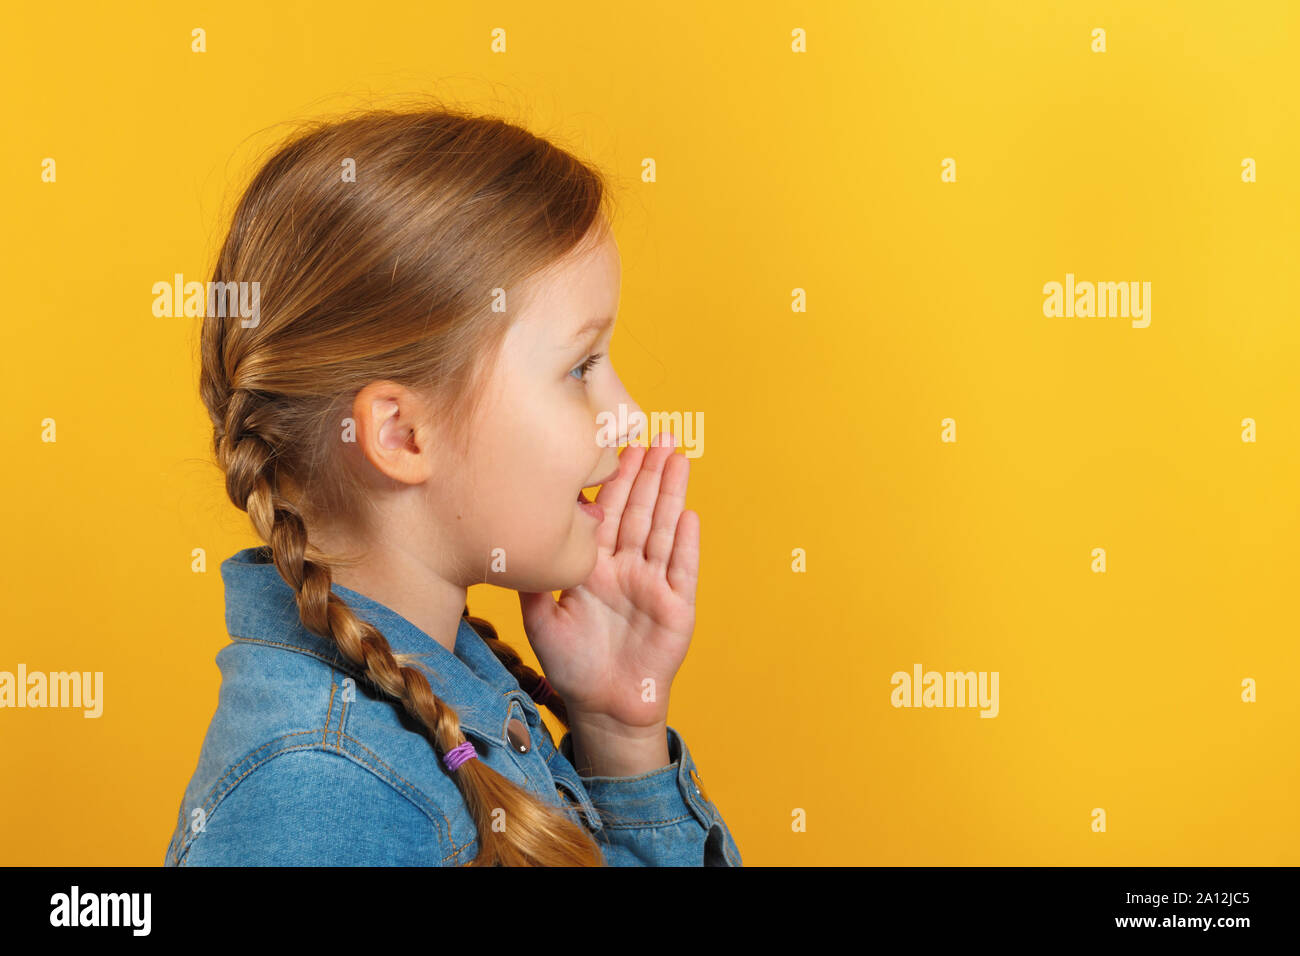 Kind Profil von der Seite. Das kleine Mädchen spricht abgesehen, hält eine Hand an den Mund. Stockfoto